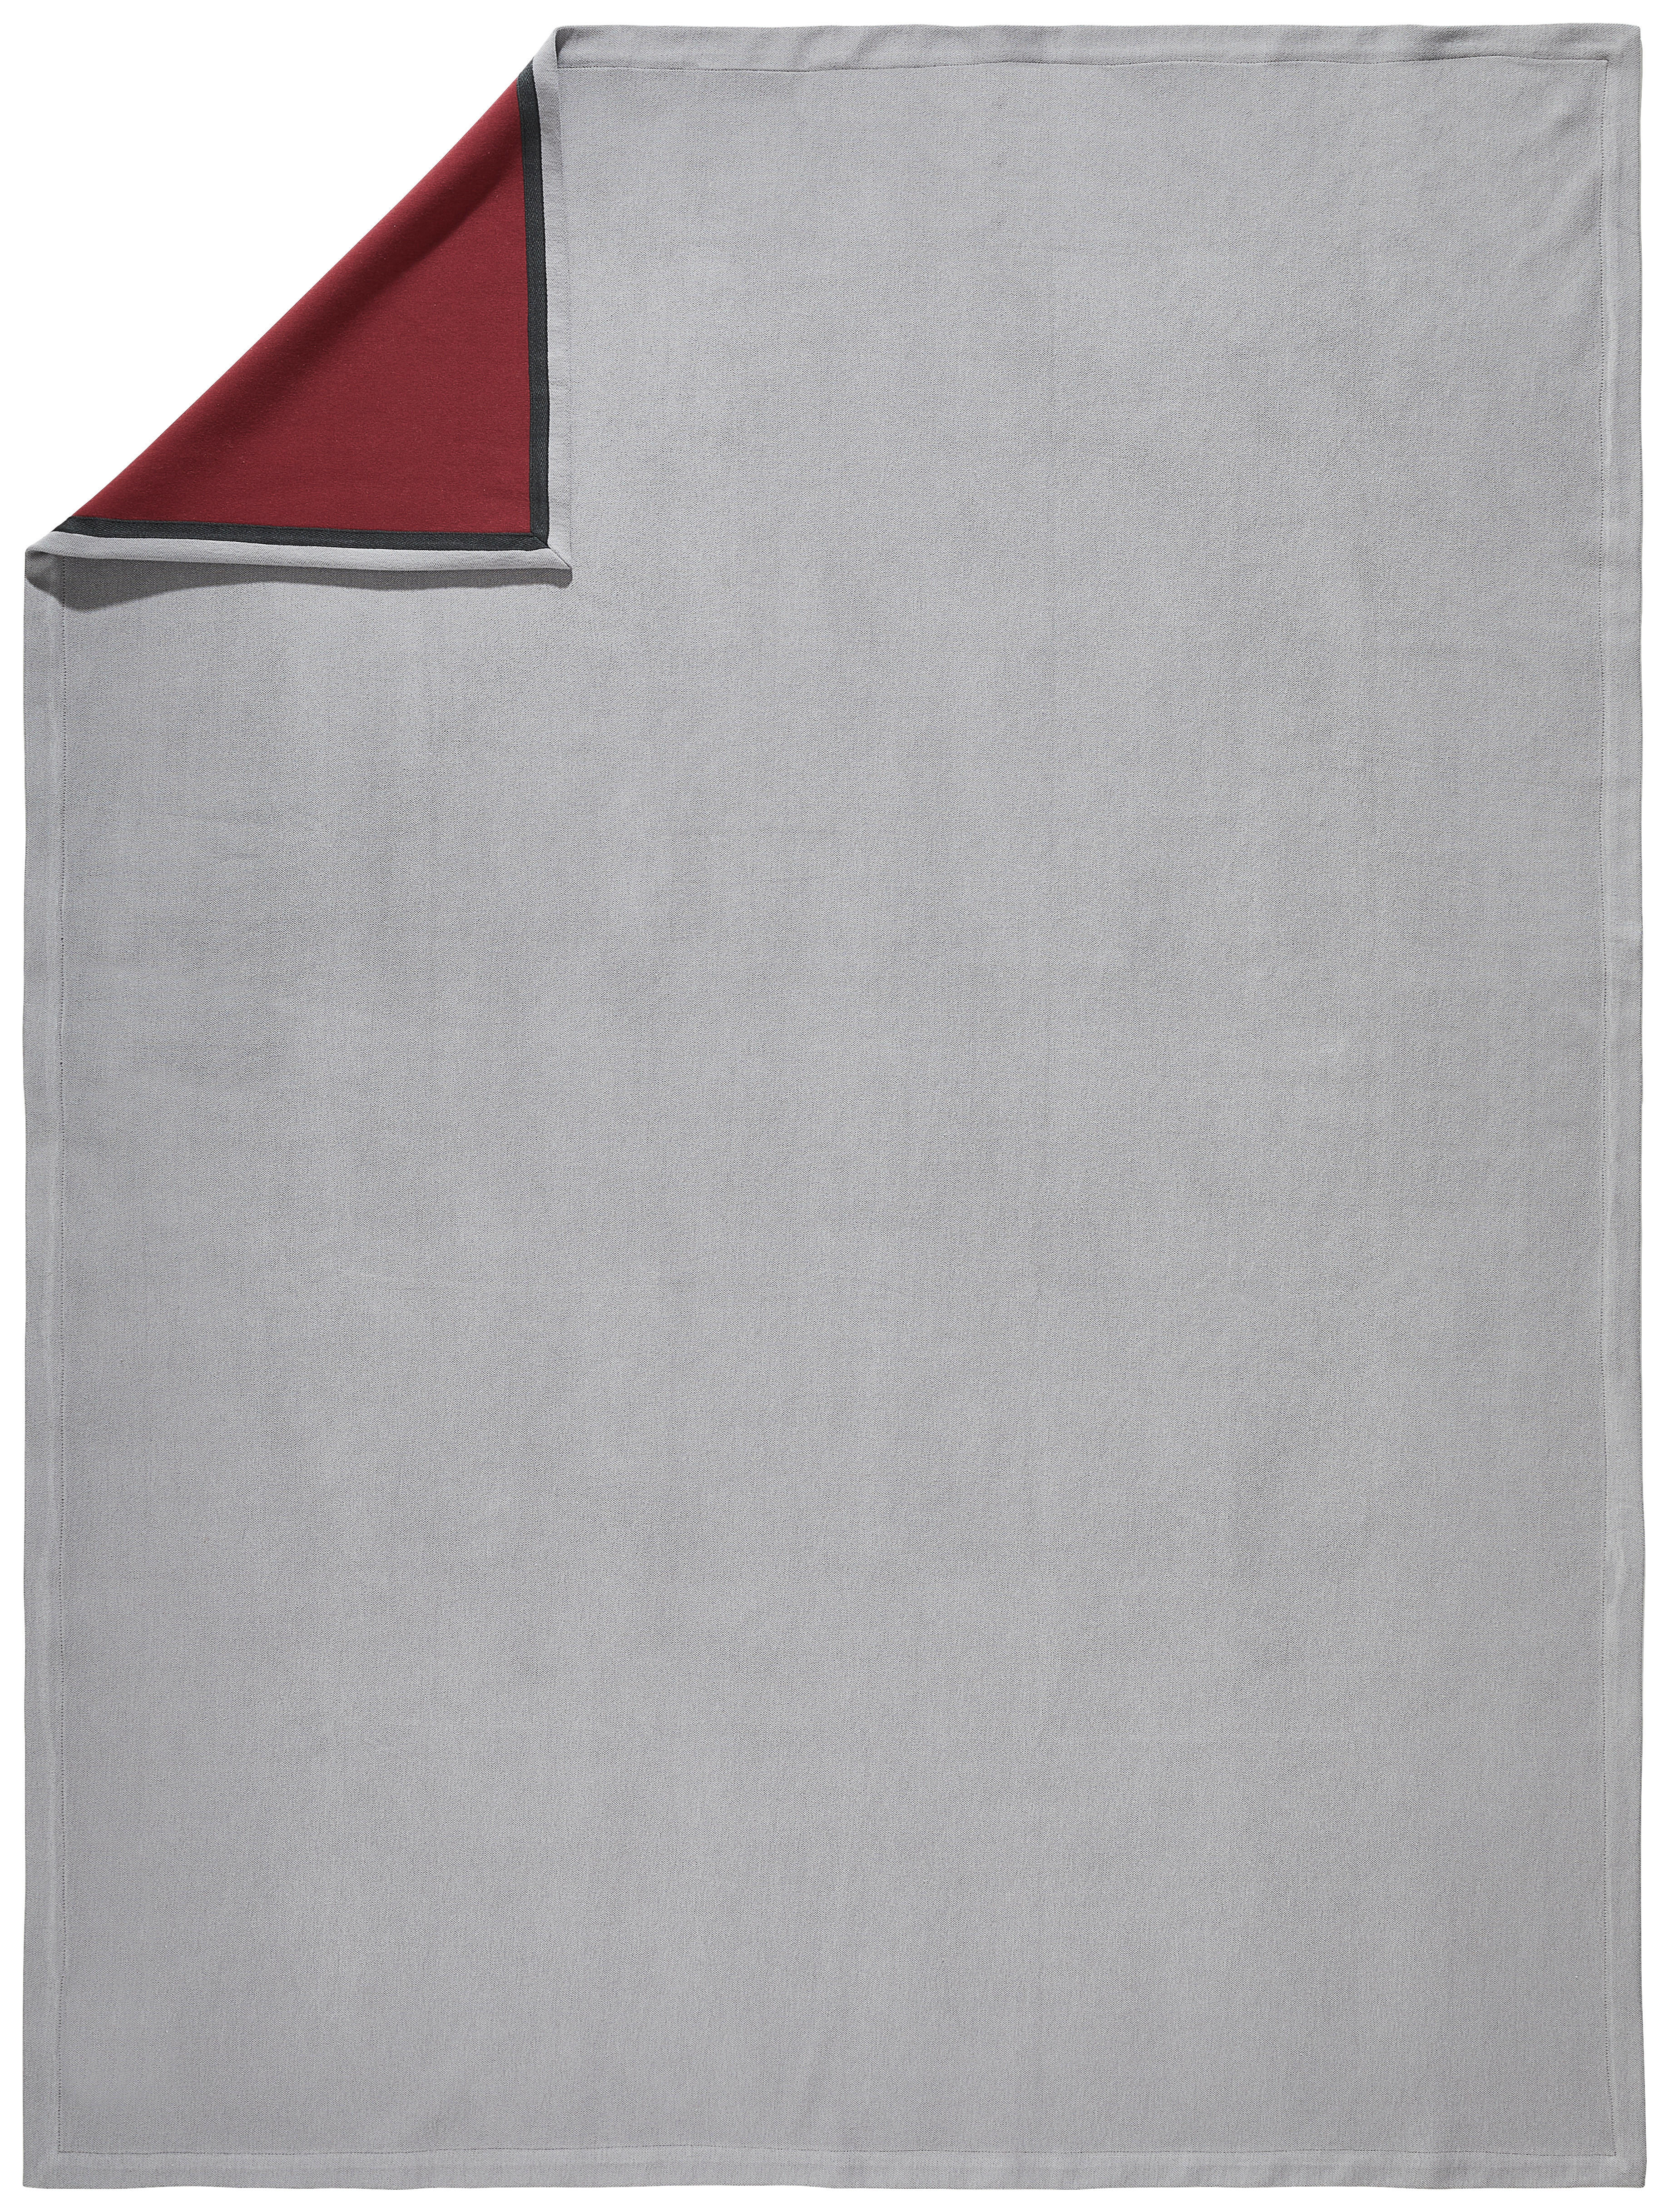 WOHNDECKE Tivat 130/170 cm  - Beere/Silberfarben, Design, Textil (130/170cm) - Dieter Knoll